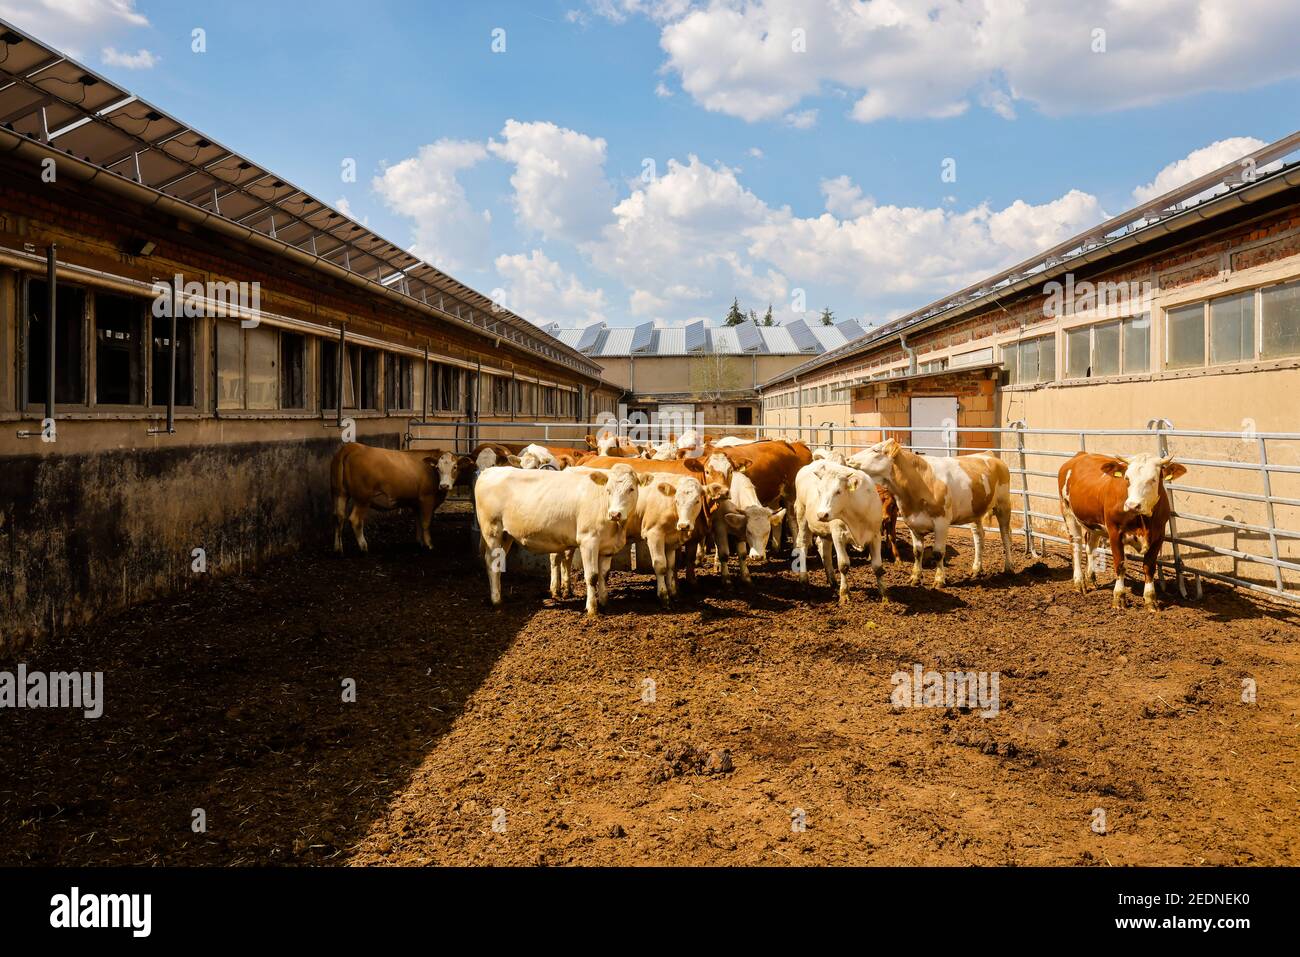 17.08.2020, Wittichenau, Sassonia, Germania - stalle di bestiame, ex edifici GPL ora con tetto solare, sulla fattoria a conduzione familiare Domanja bovini sono tenuti in Foto Stock